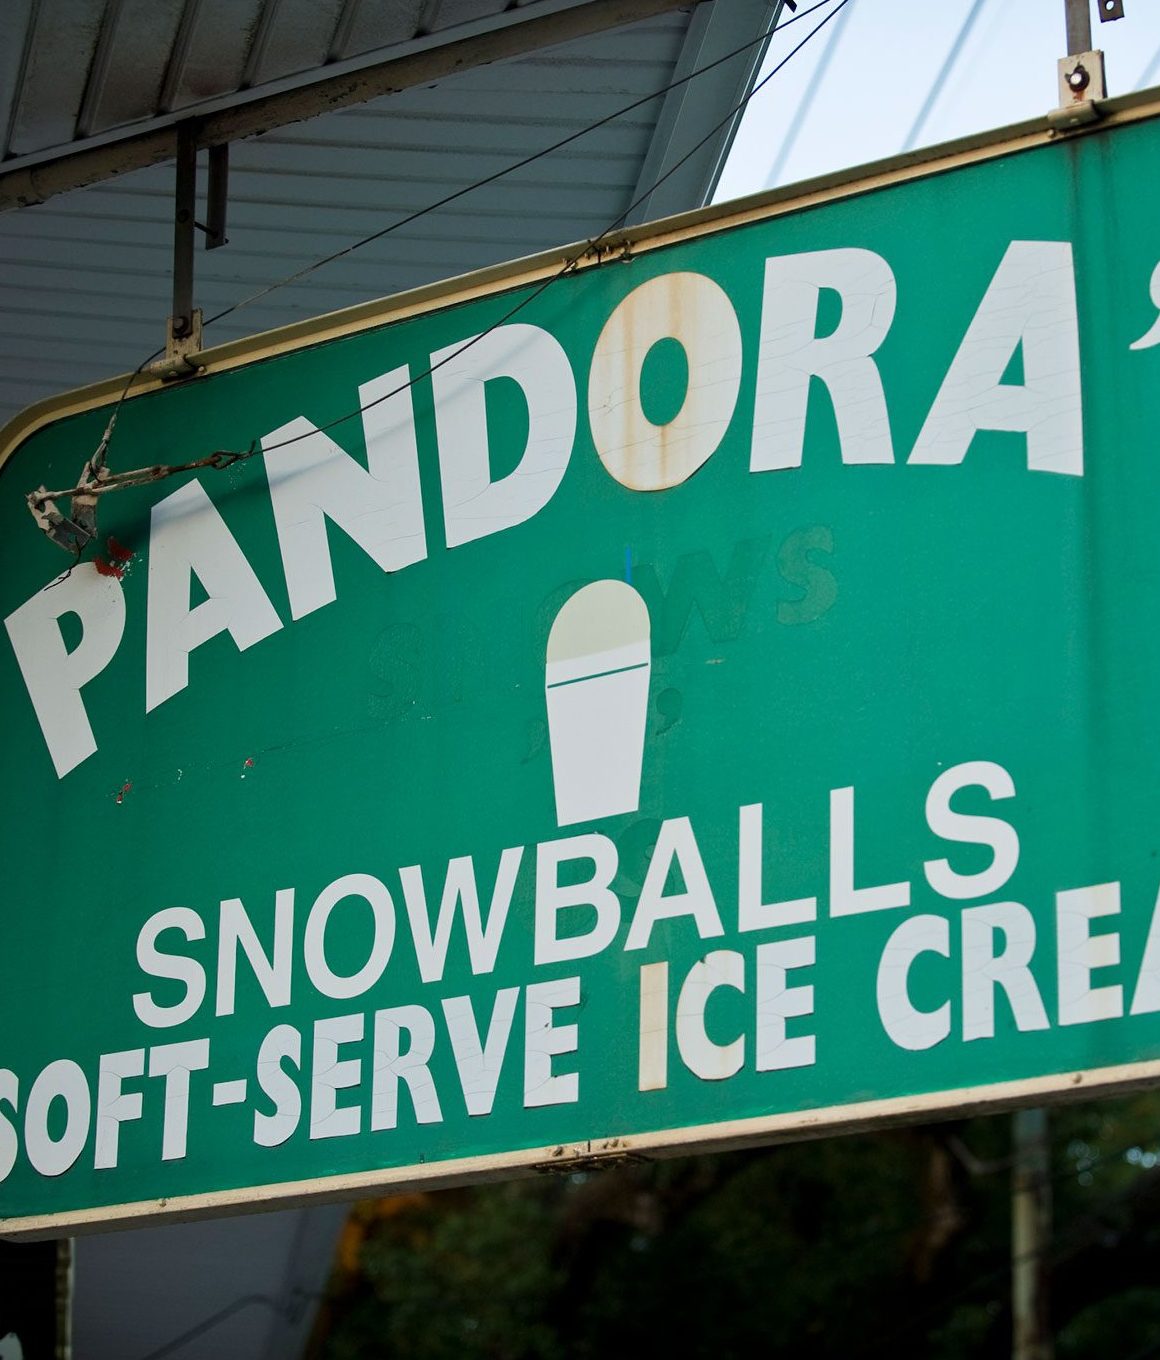 Pandora soft-serve ice cream